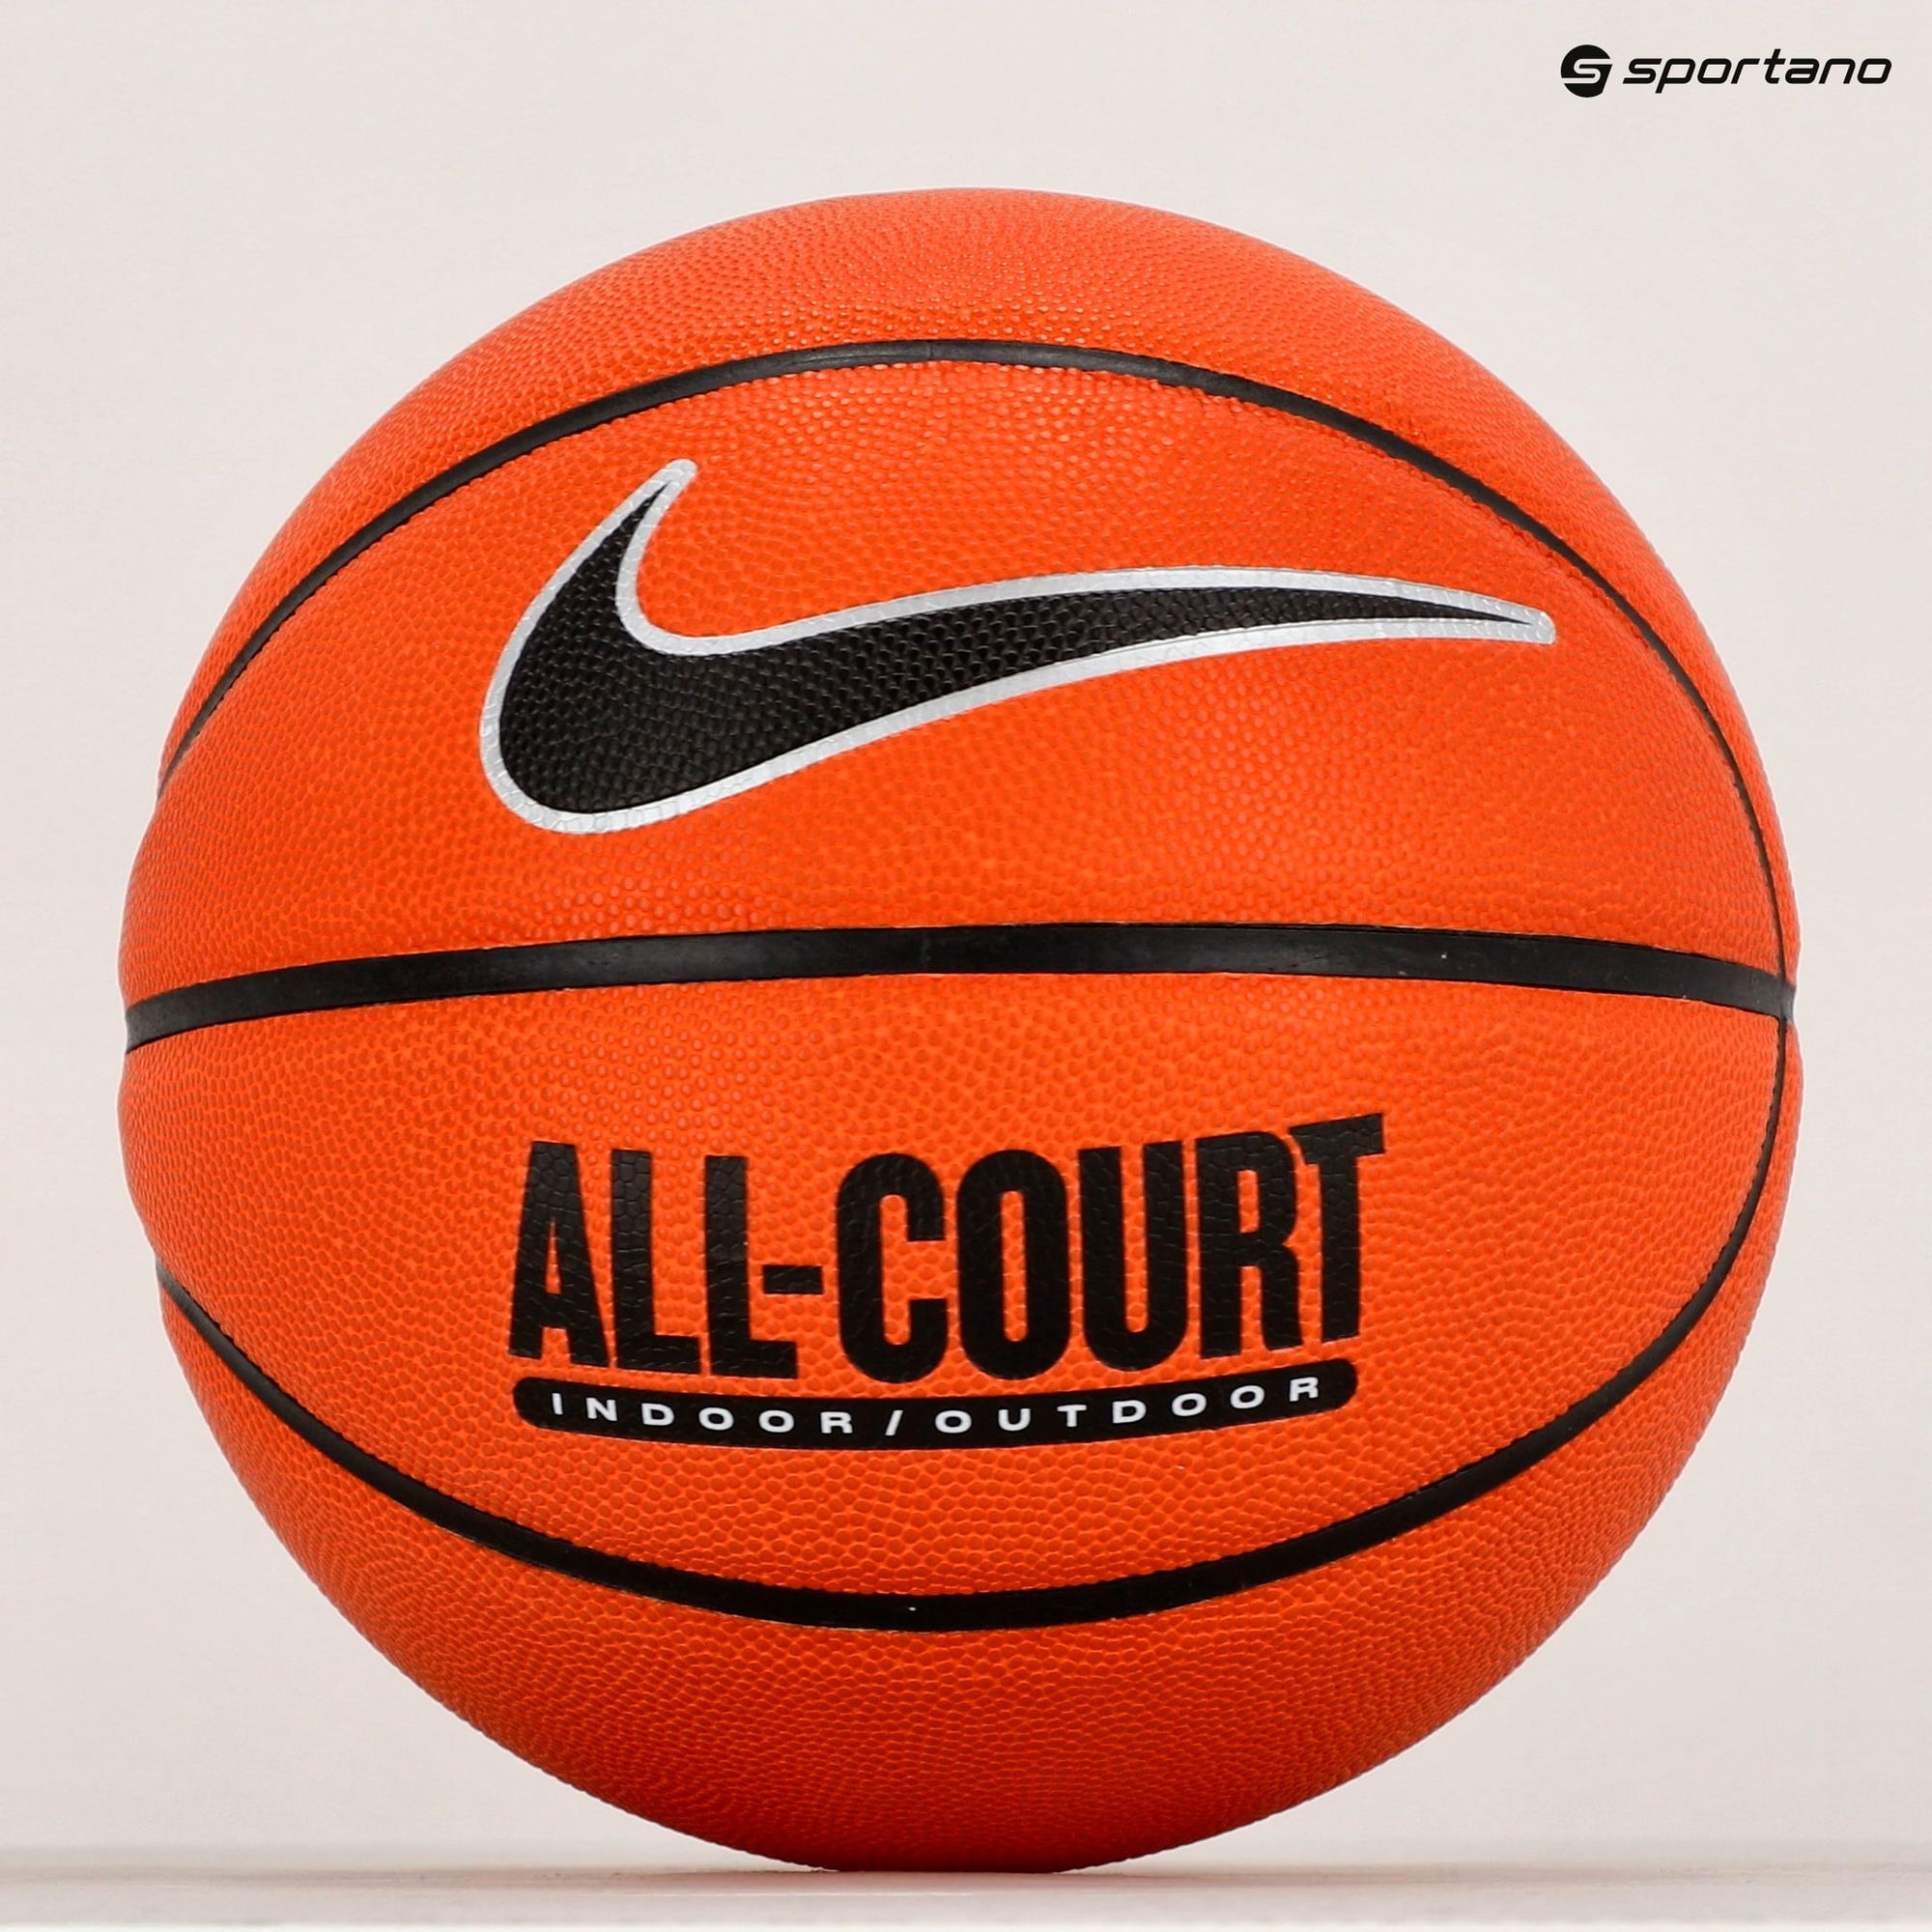 Piłka do koszykówki Nike Everyday All Court 8P Deflated amber/black/metallic silver rozmiar 7 zdjęcie nr 4